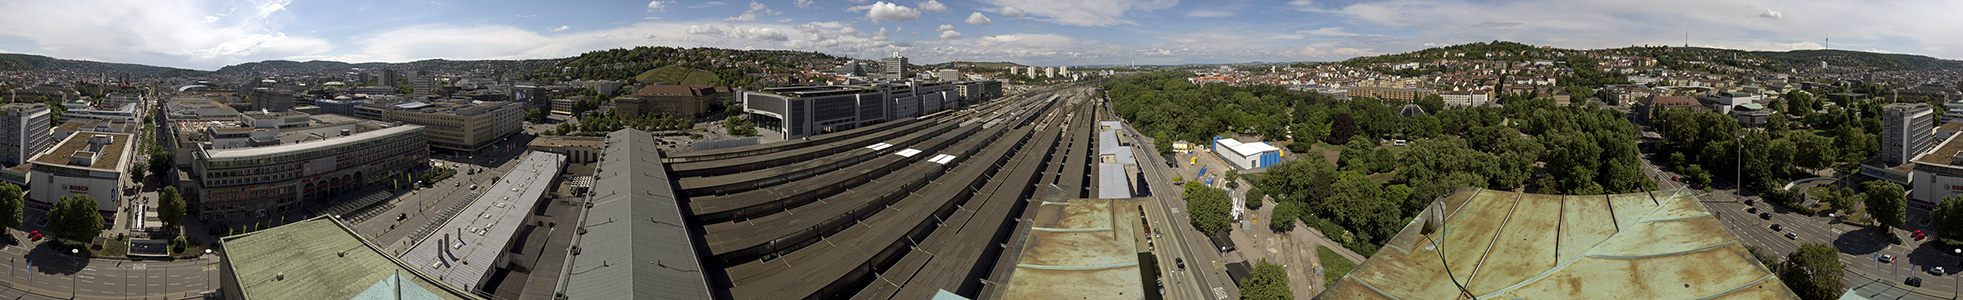 Blick vom Turm des Hauptbahnhofs: Von der Königstraße bis zur Königstraße Stuttgart